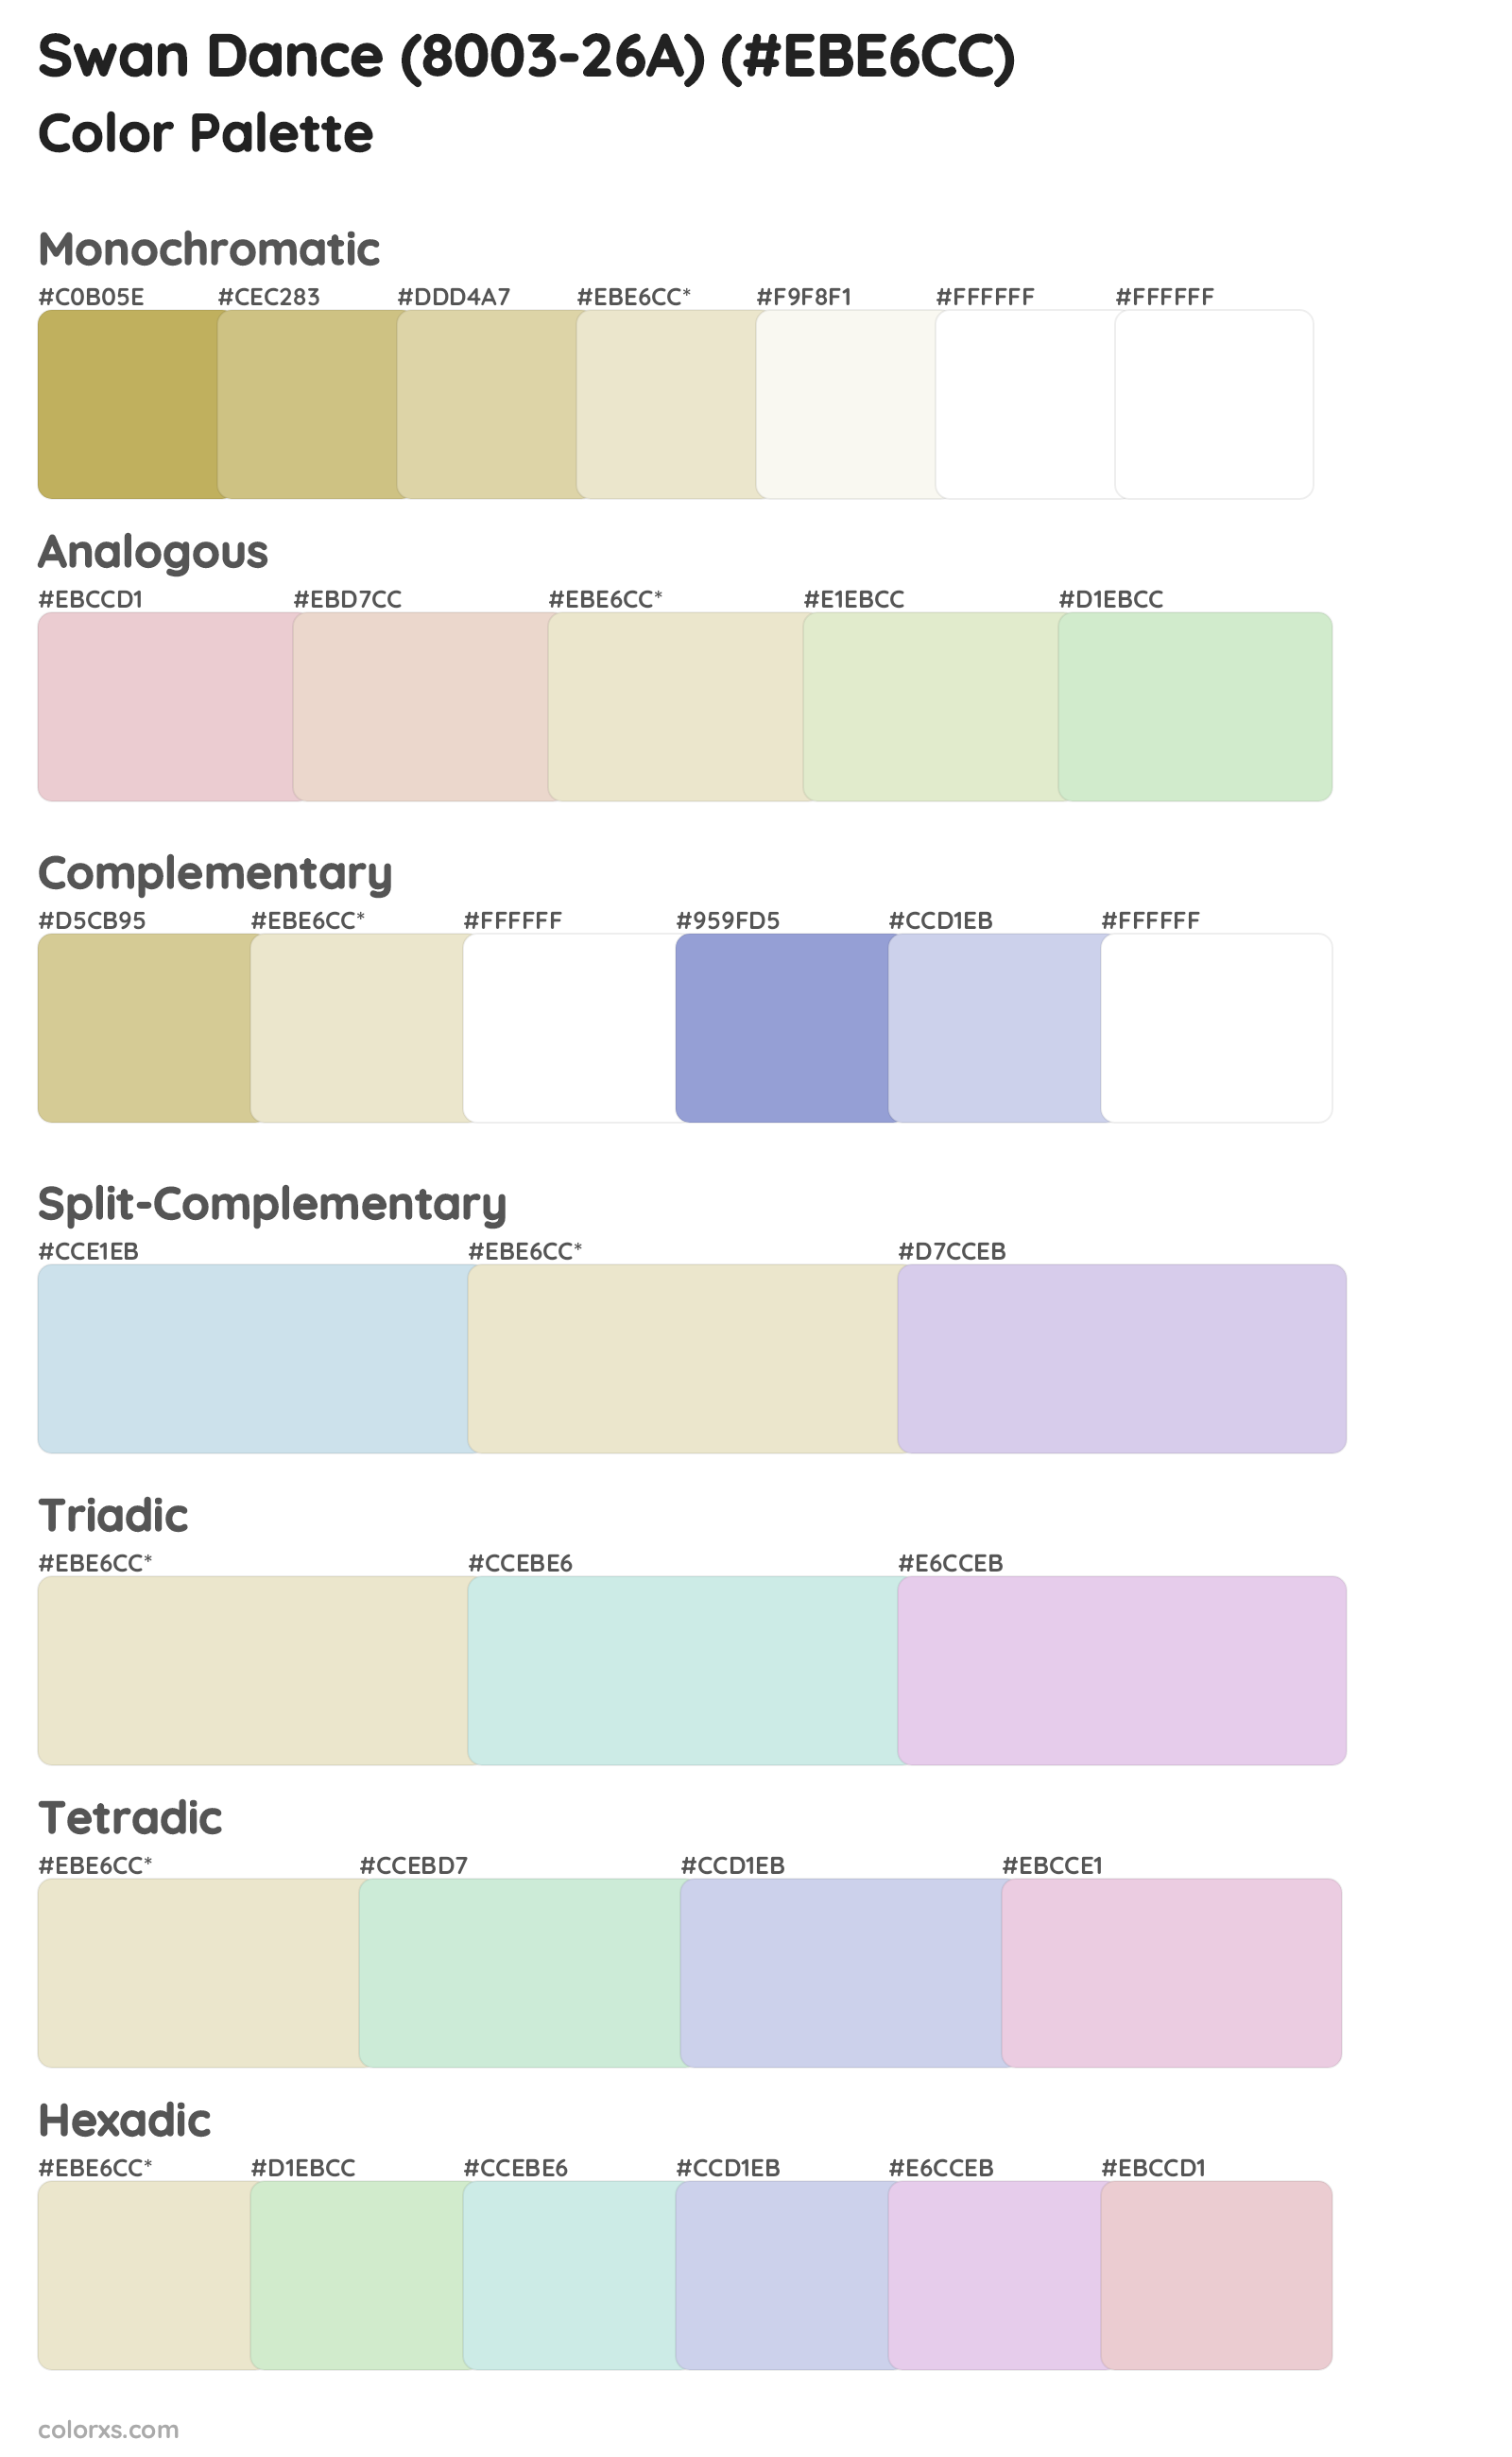 Swan Dance (8003-26A) Color Scheme Palettes